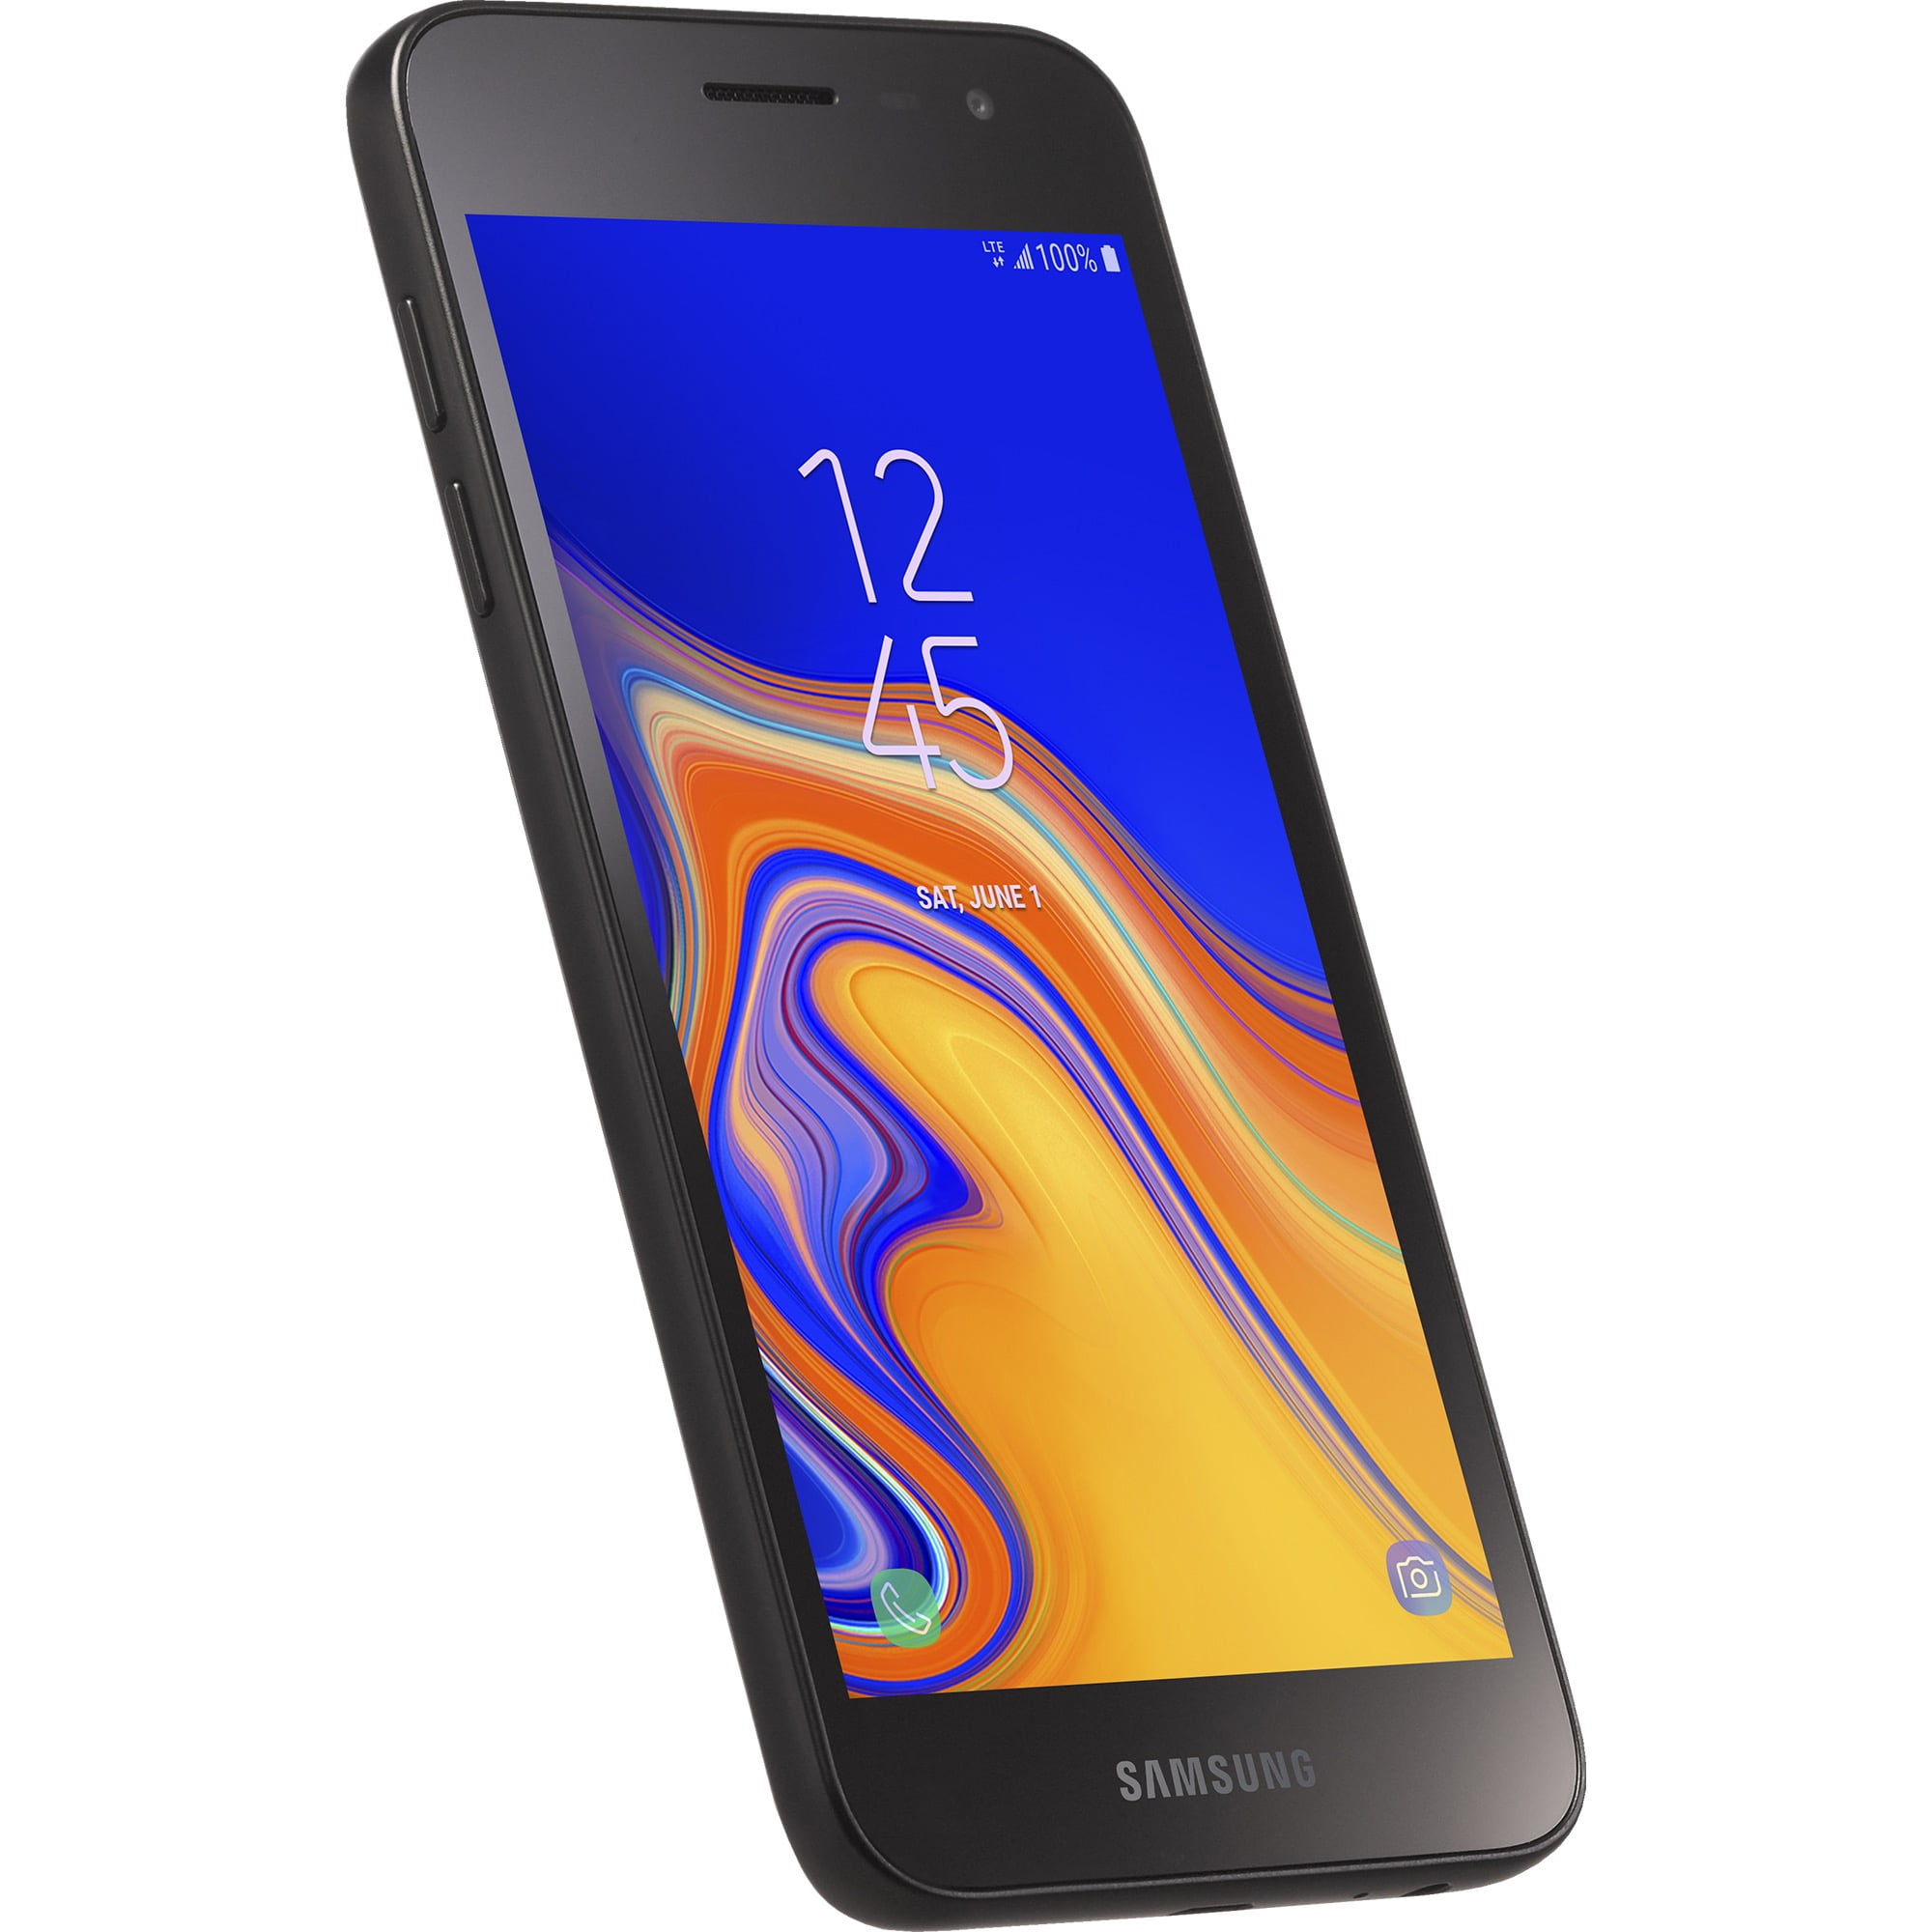 Total Wireless Samsung Galaxy J2, 16GB, Black - Prepaid Smartphone